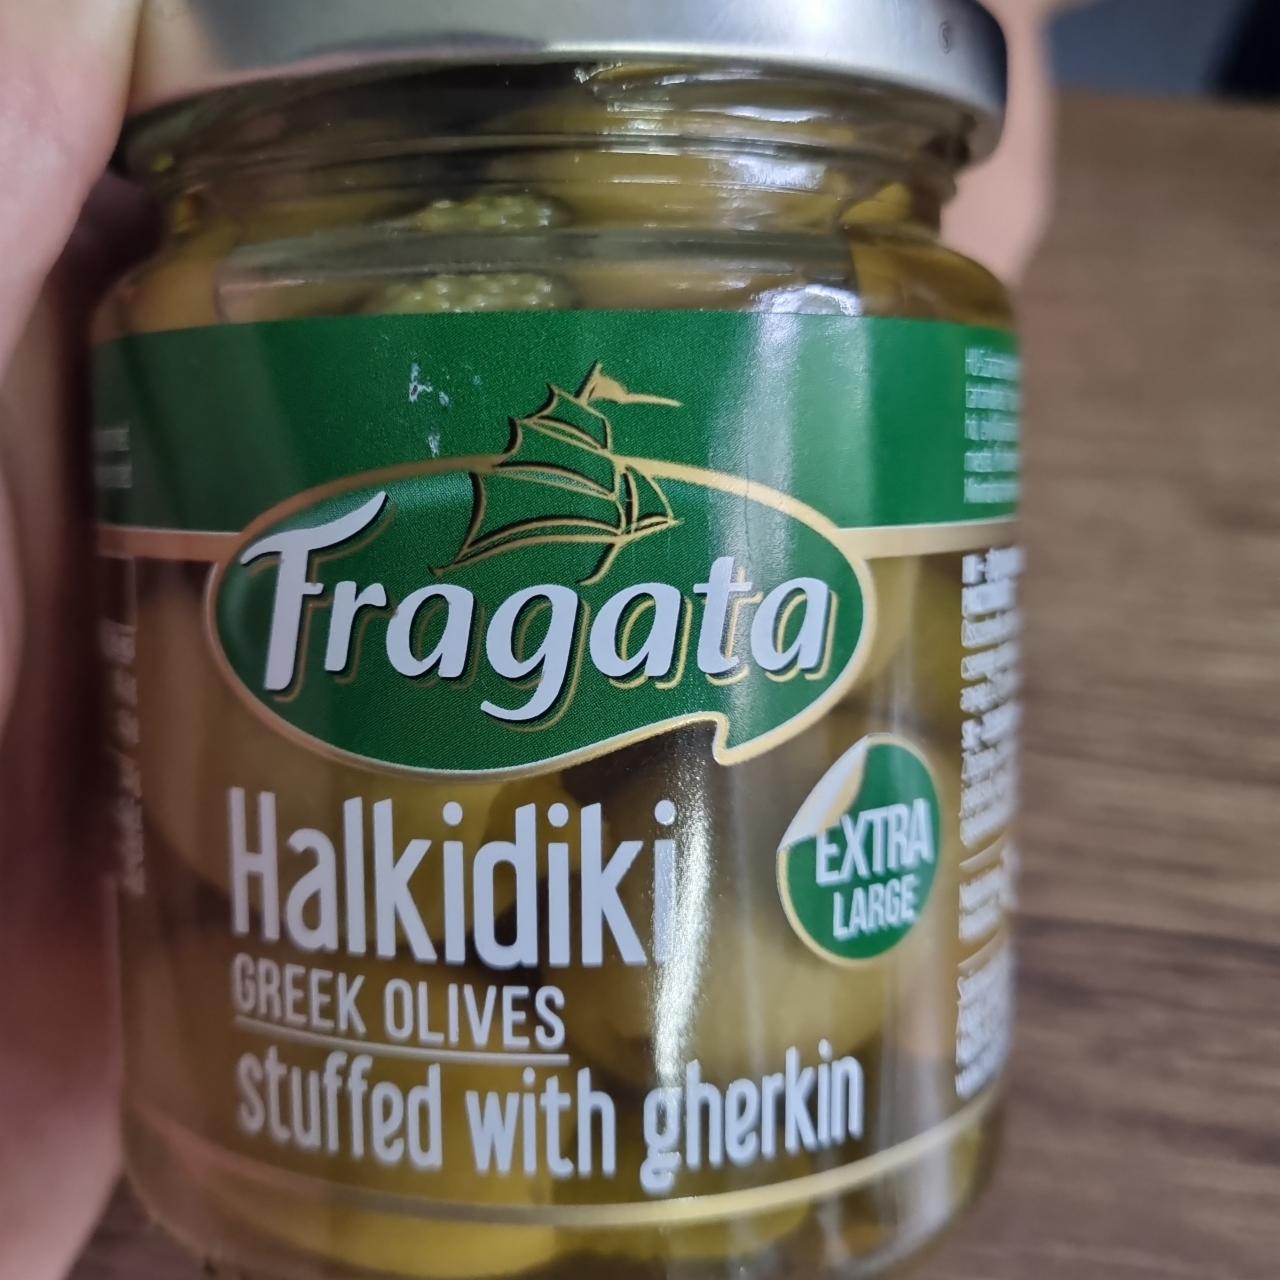 Fotografie - Halkidiki Greek olives stuffed with gherkin Fragata